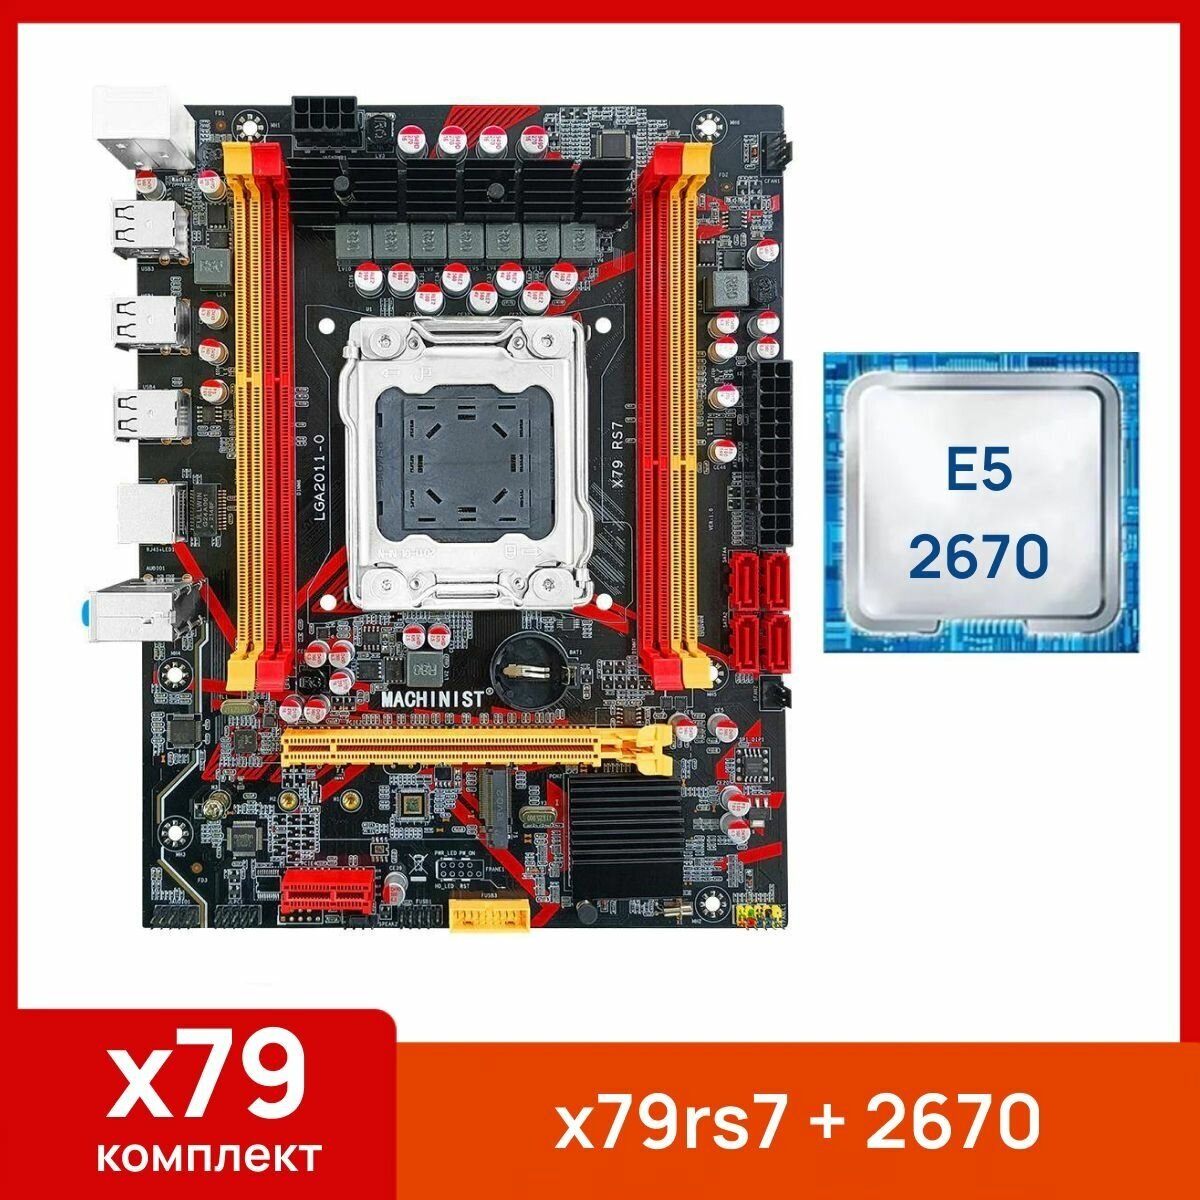 Комплект: Материнская плата Machinist RS-7 + Процессор Xeon E5 2670